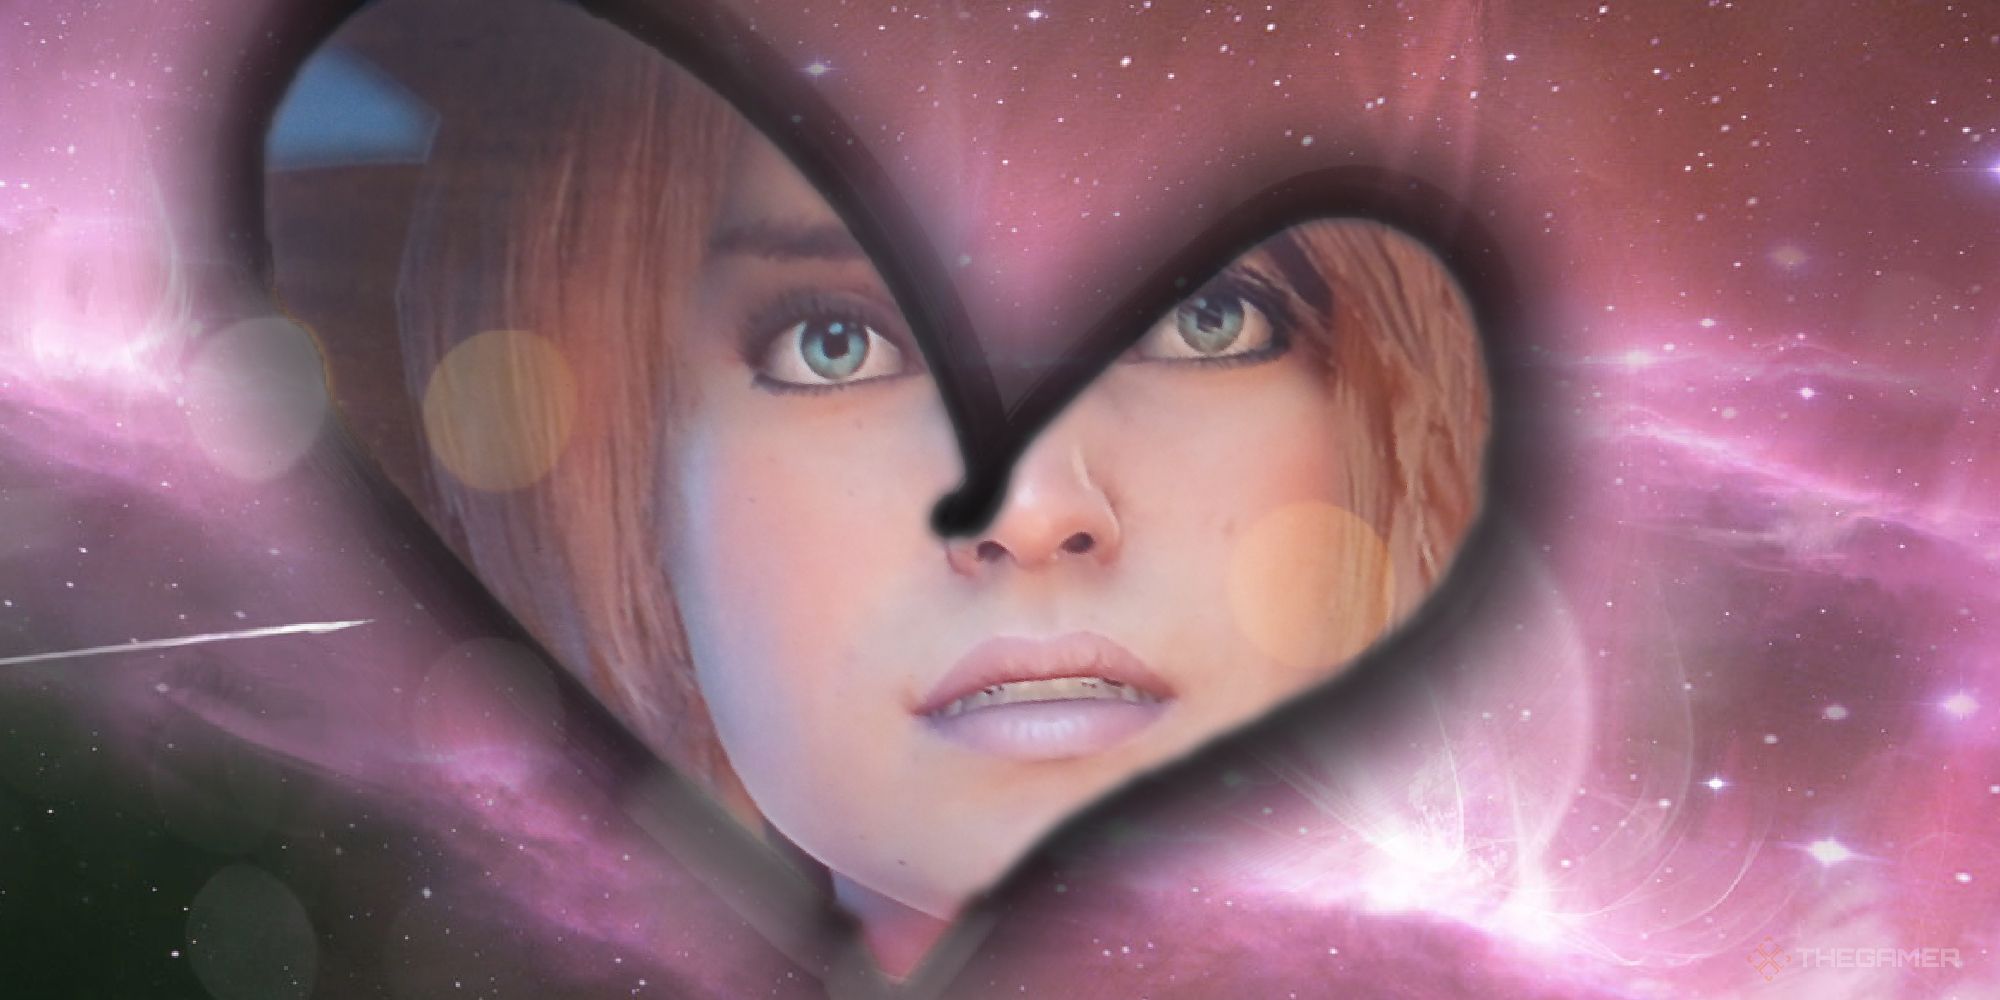 Mass Effect love